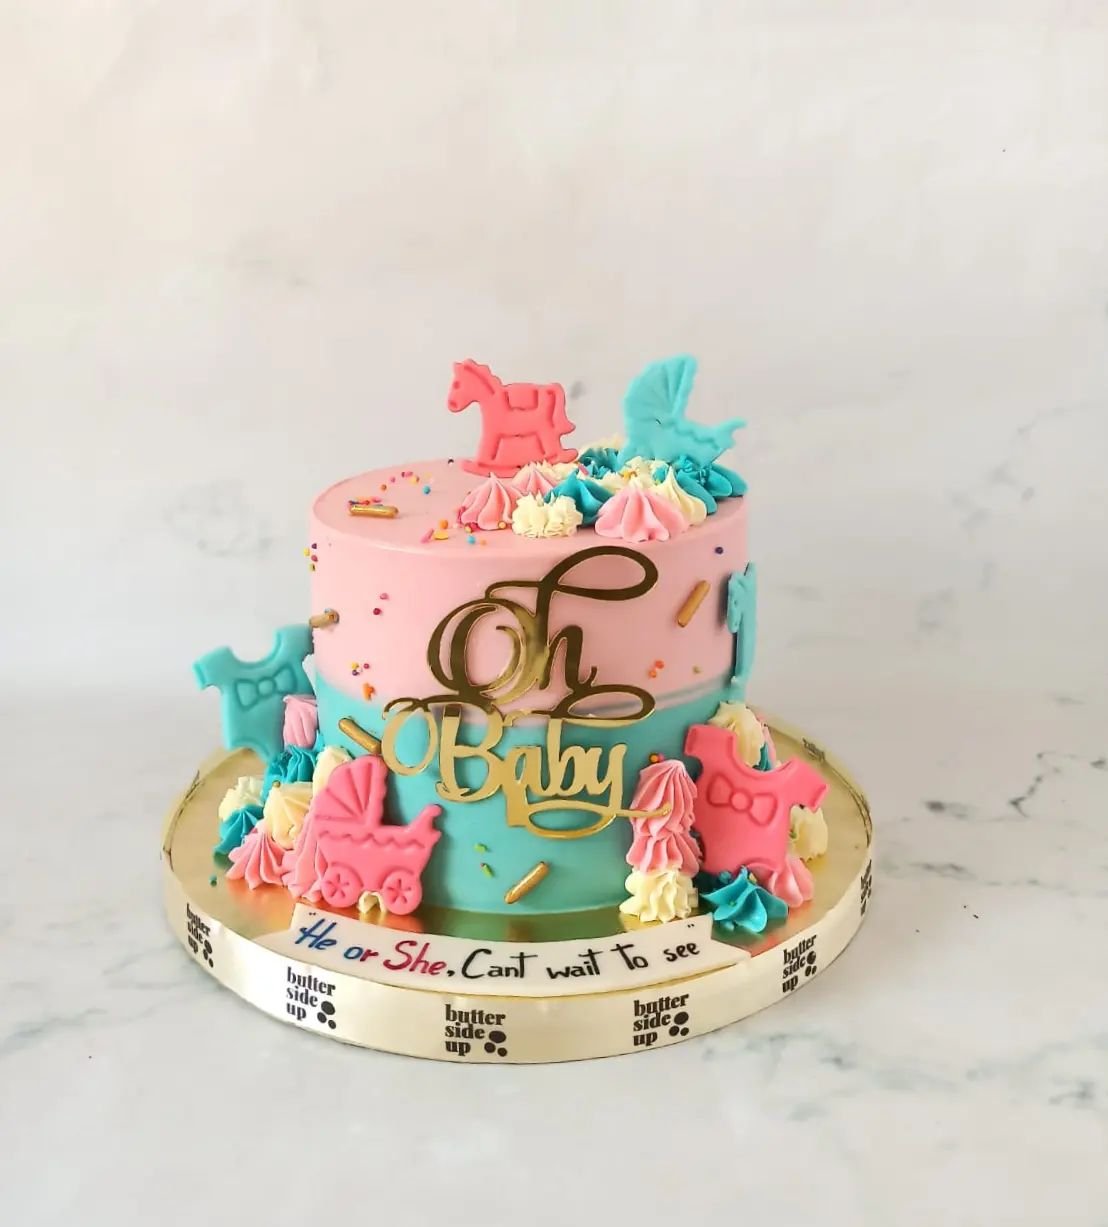 Oh Baby- it's a Baby shower cake! 

[ customised cakes bangalore, buttercream cake, bangalore gifting]